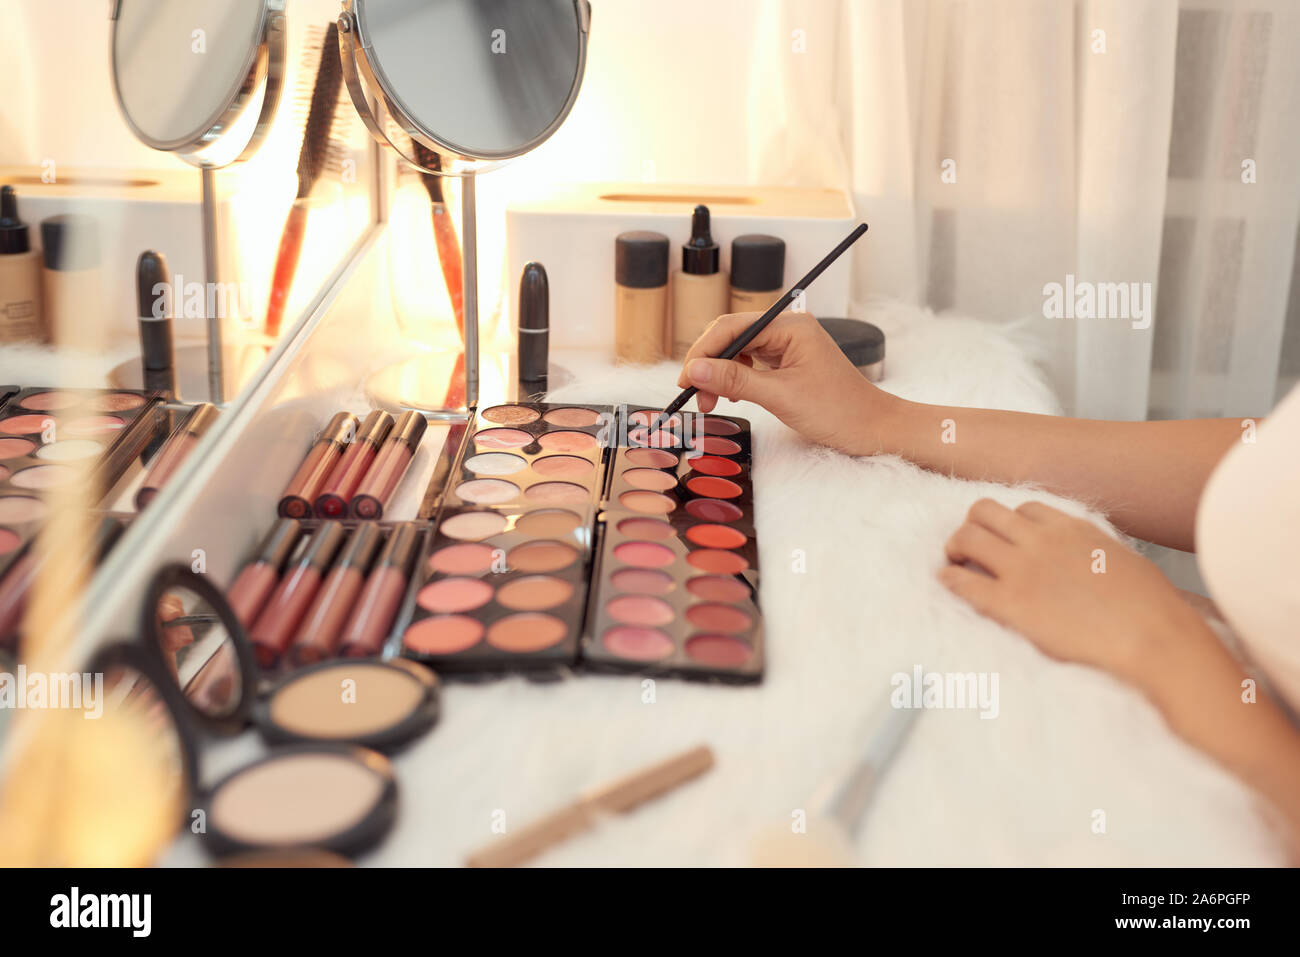 Dekorative Kosmetik und Tools auf Schminktisch in der Nähe von Make-up-Spiegel im Zimmer Stockfoto